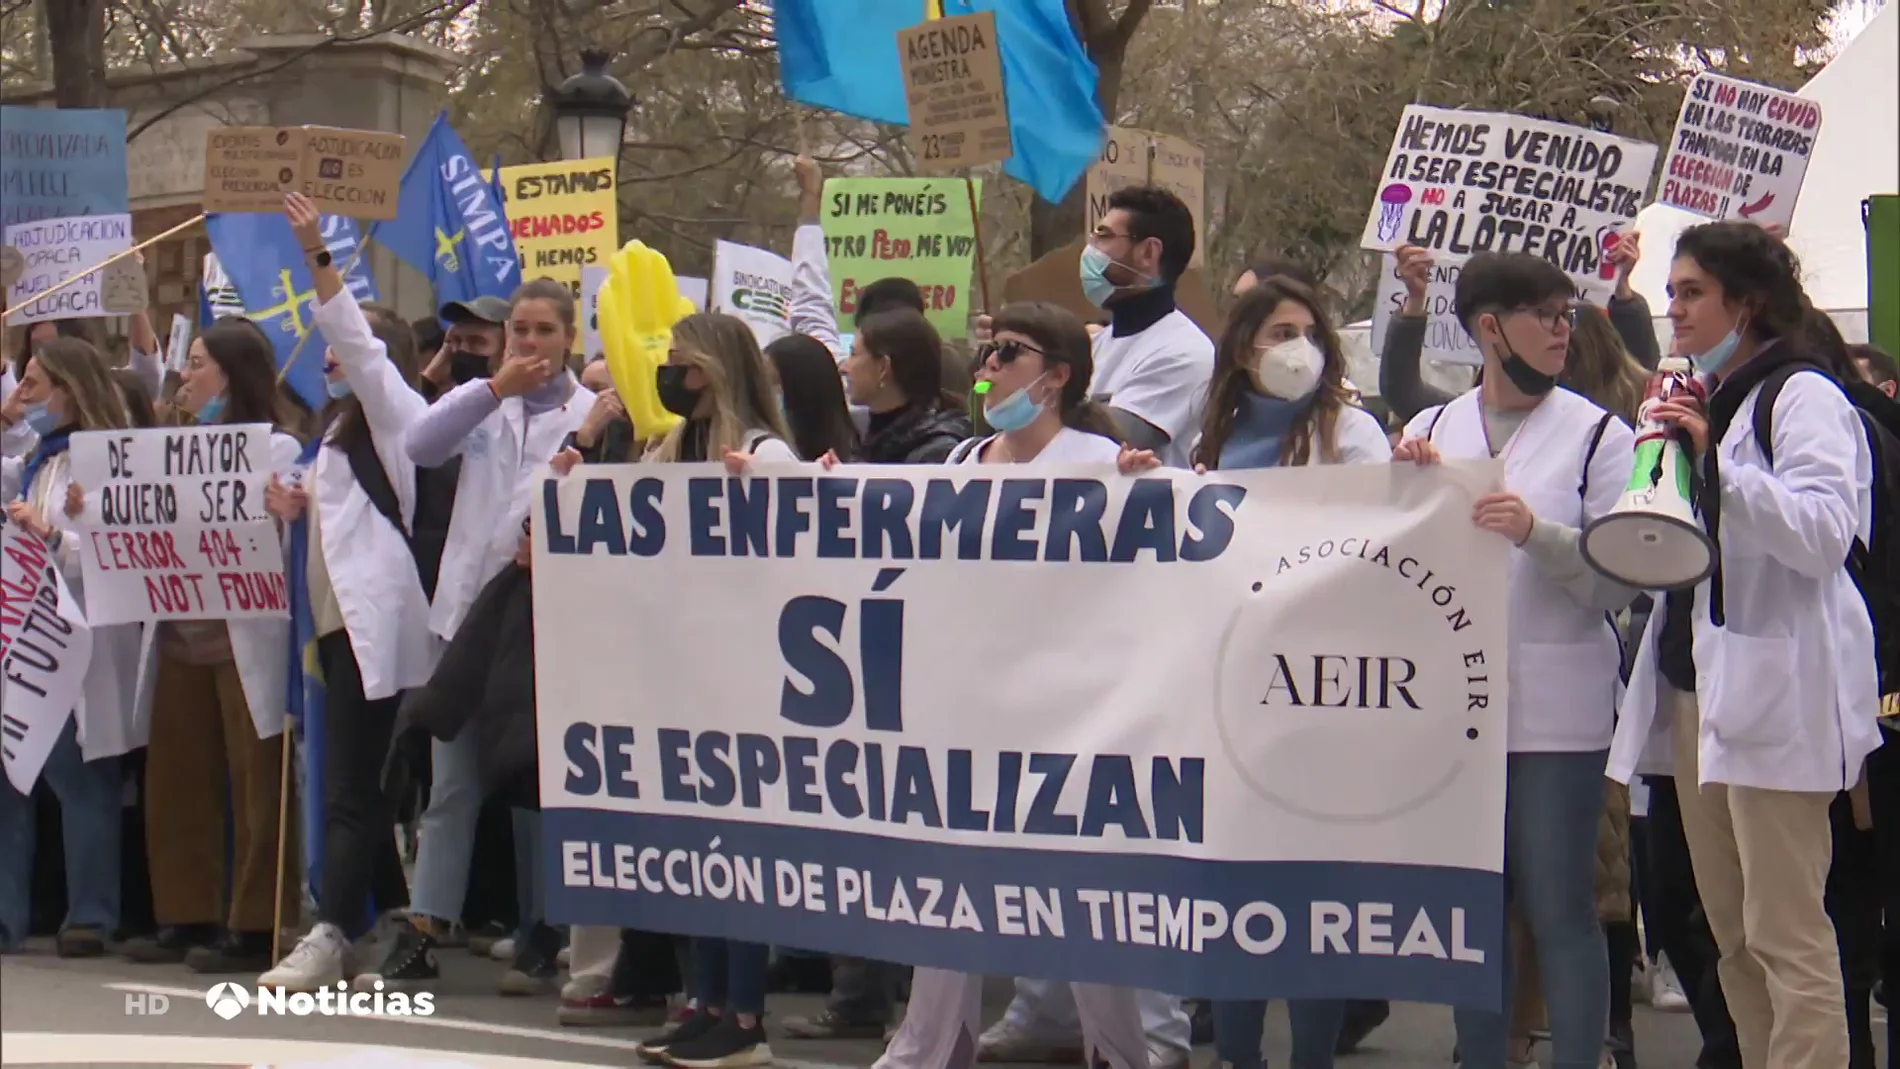 ¿Por qué protestan los MIR este miércoles en Madrid? Las claves y origen del problema